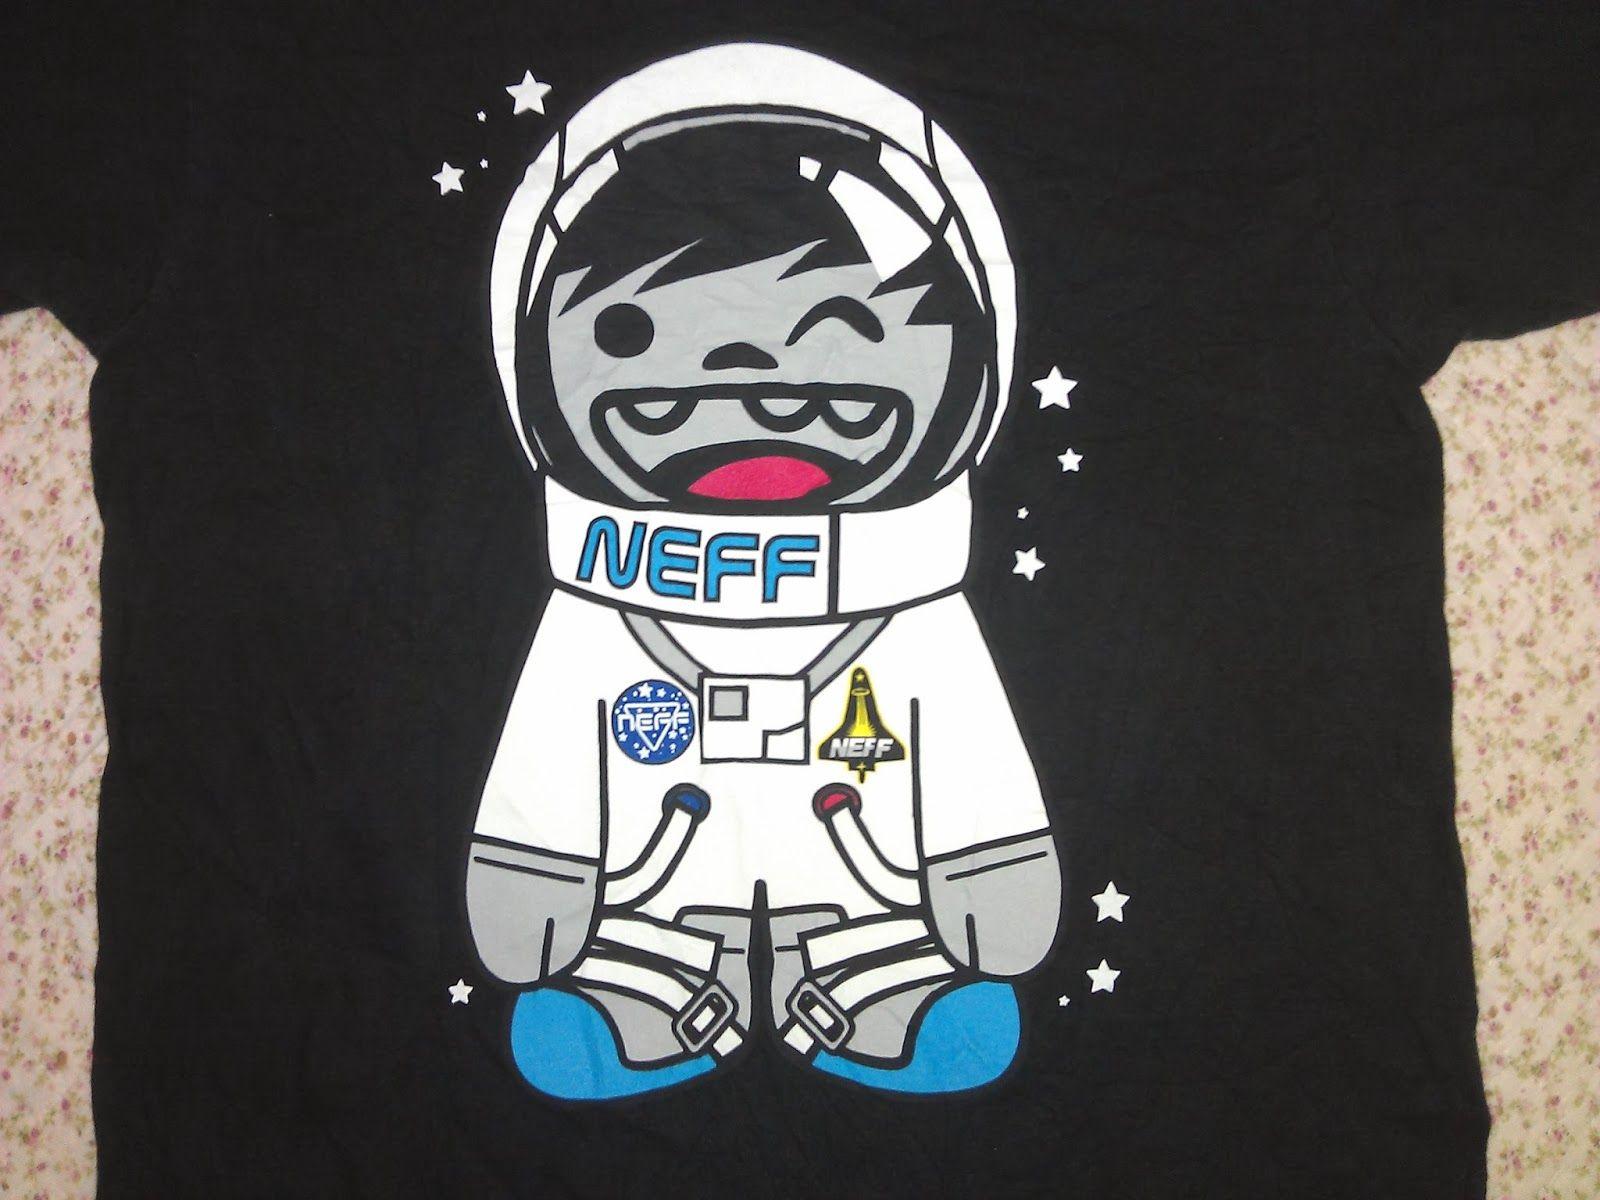 Neff Skateboard Logo - PROVOX: NEFF Skateboards Tshirt